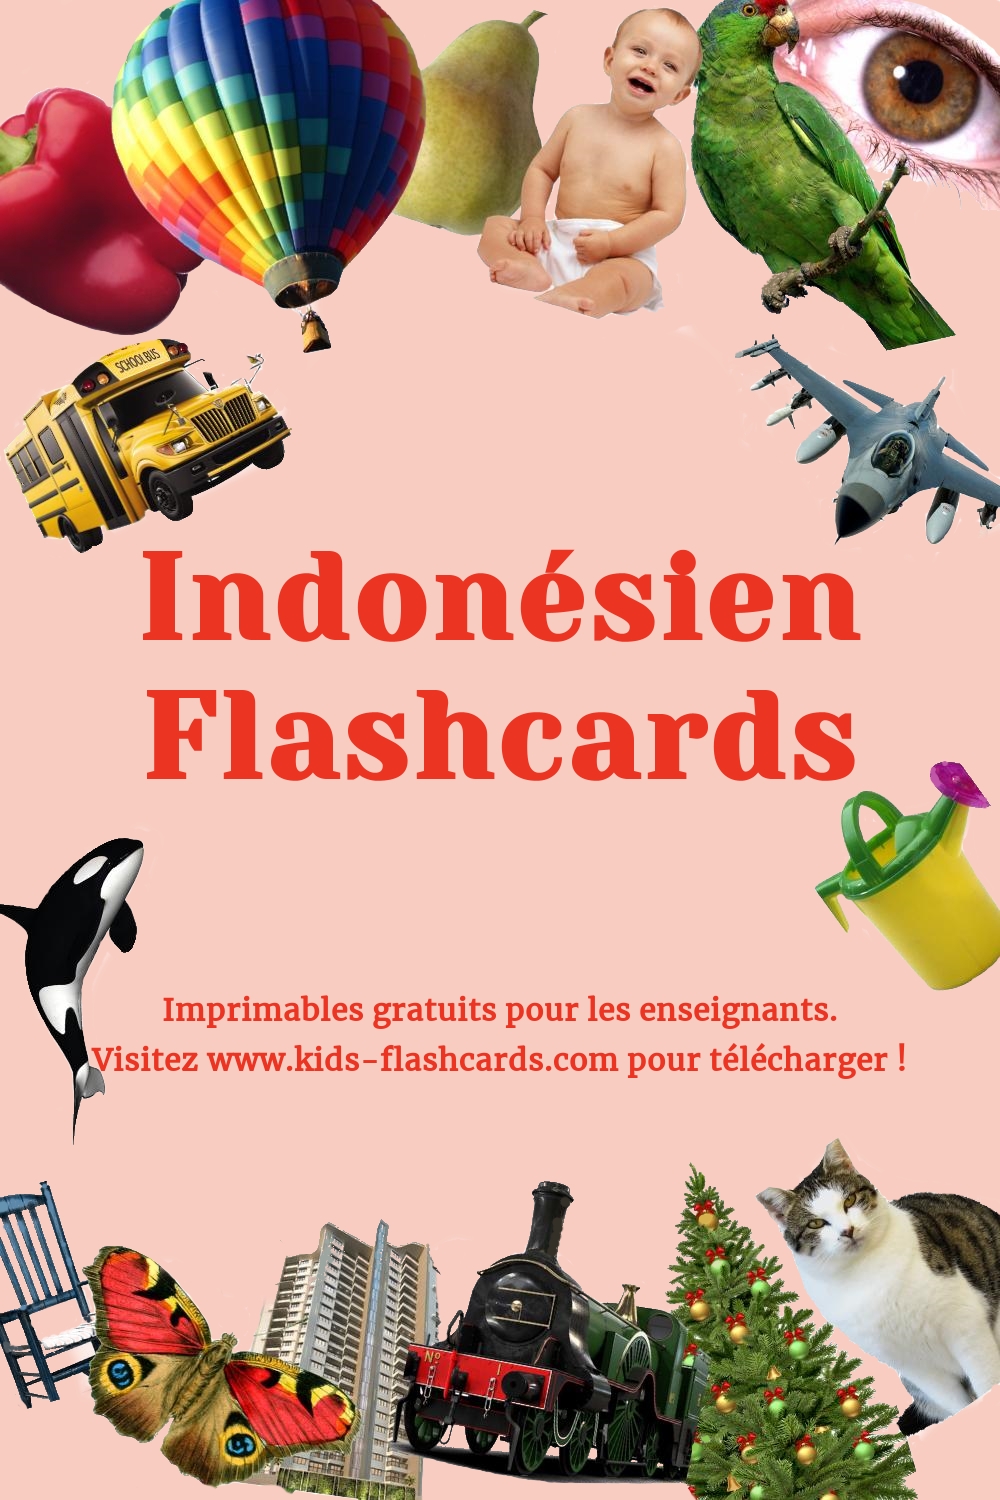 Imprimables gratuits en Indonésien